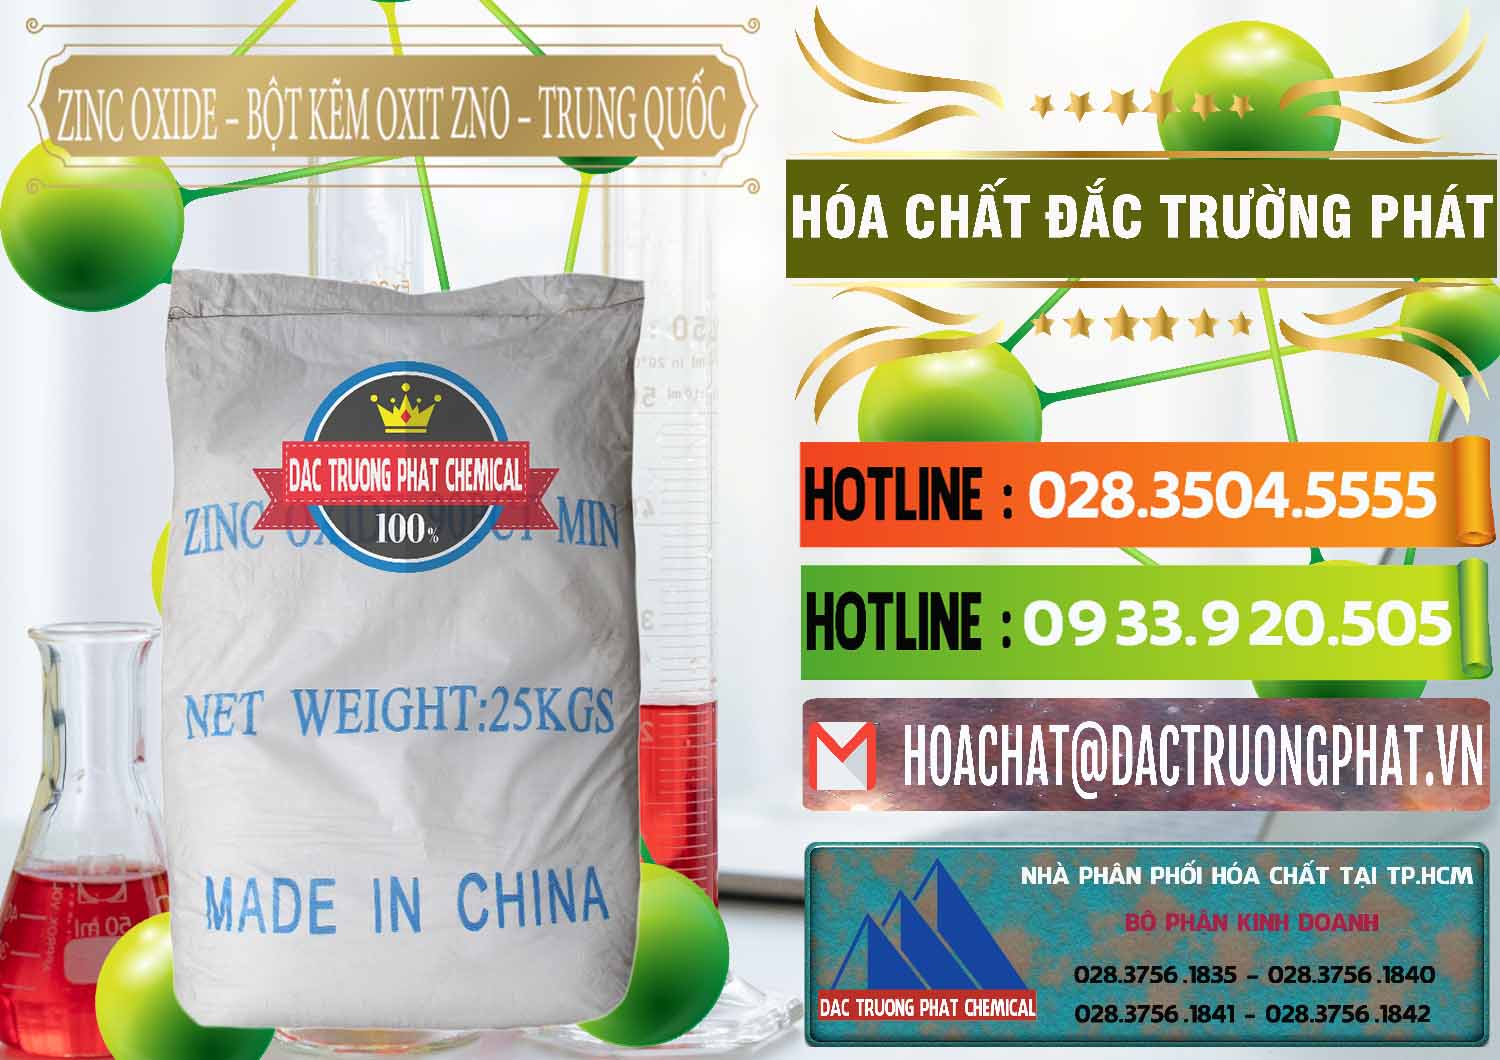 Nơi chuyên bán - phân phối Zinc Oxide - Bột Kẽm Oxit ZNO Trung Quốc China - 0182 - Công ty chuyên bán và phân phối hóa chất tại TP.HCM - cungcaphoachat.com.vn